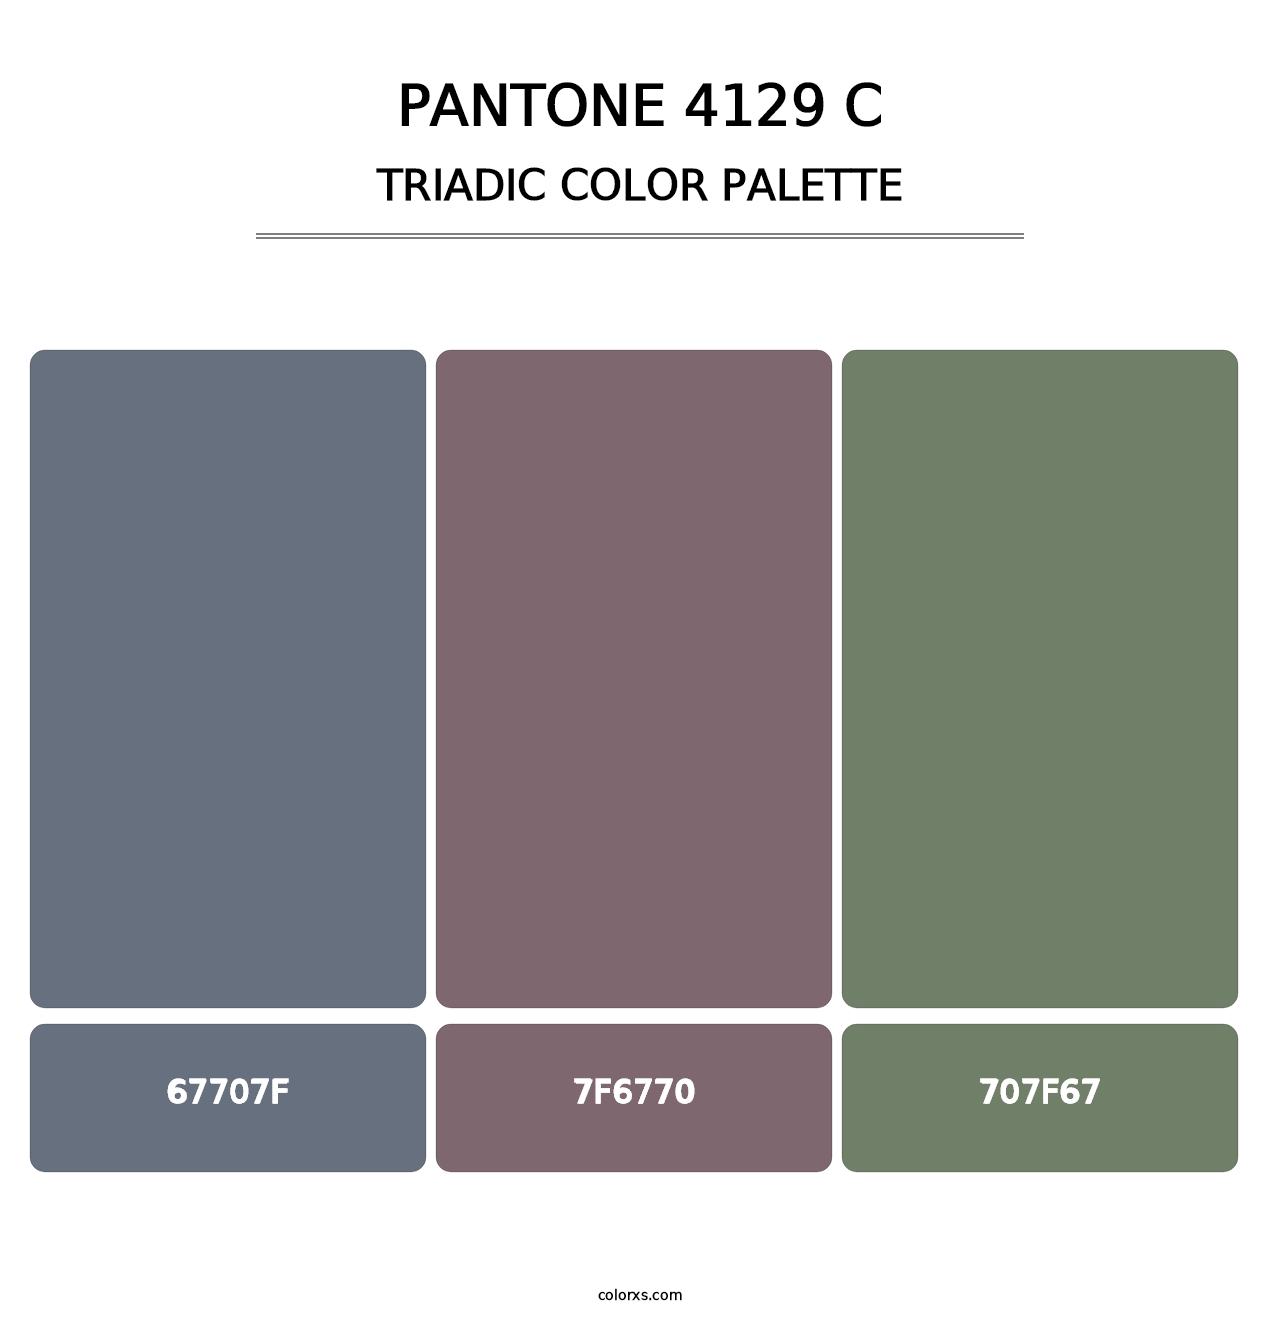 PANTONE 4129 C - Triadic Color Palette